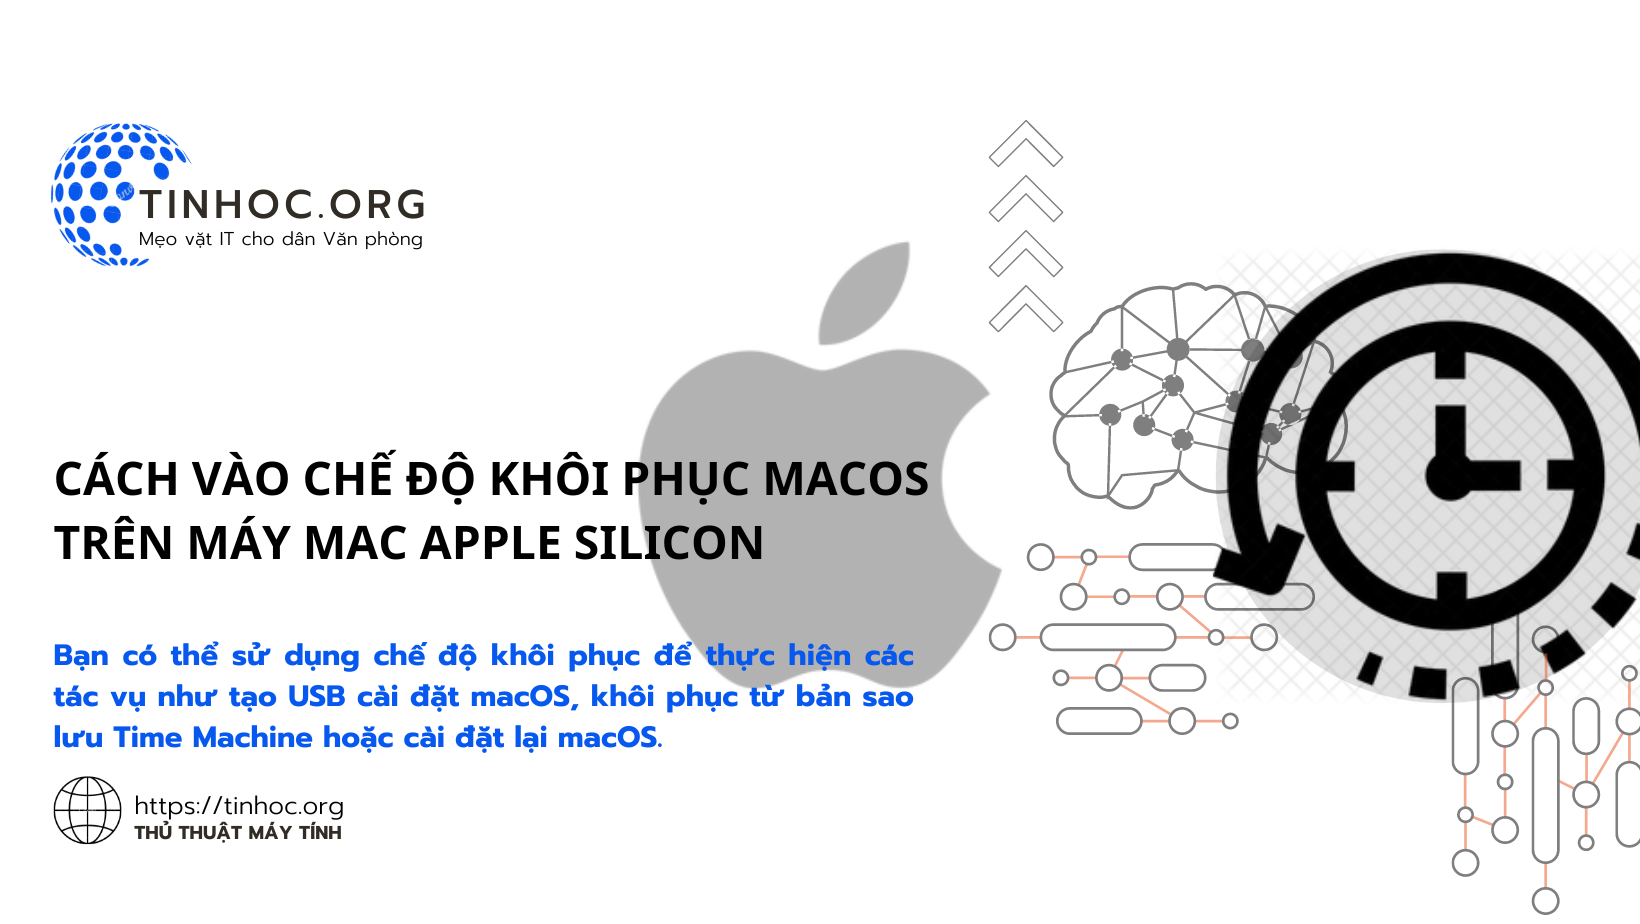 Cách vào chế độ khôi phục macOS trên máy Mac Apple Silicon